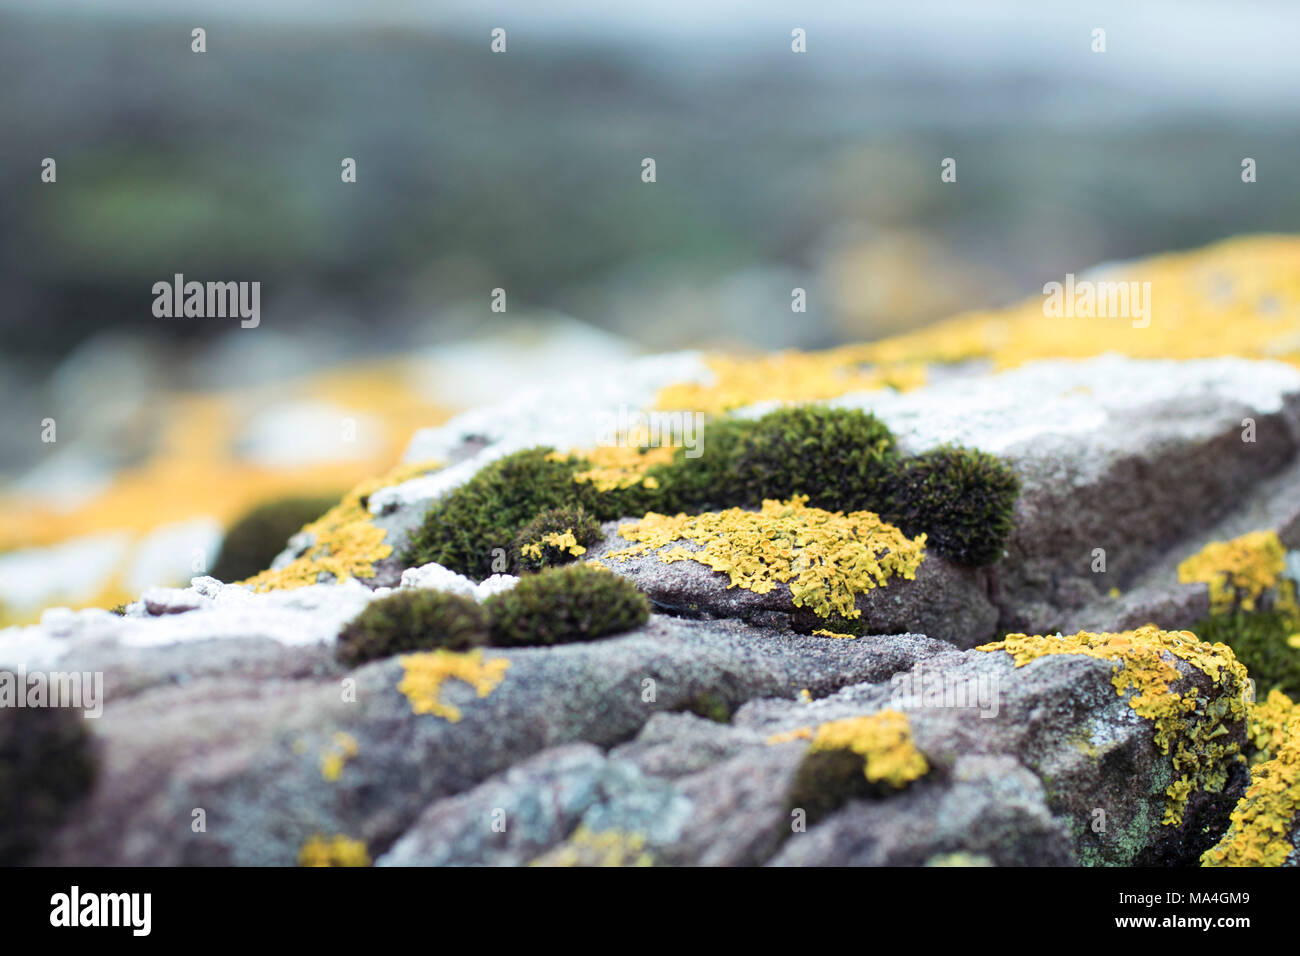 Les roches de la mer couverte de lichens, de mousses, d'algues, près à la photographie du flou historique, vert et jaune Banque D'Images